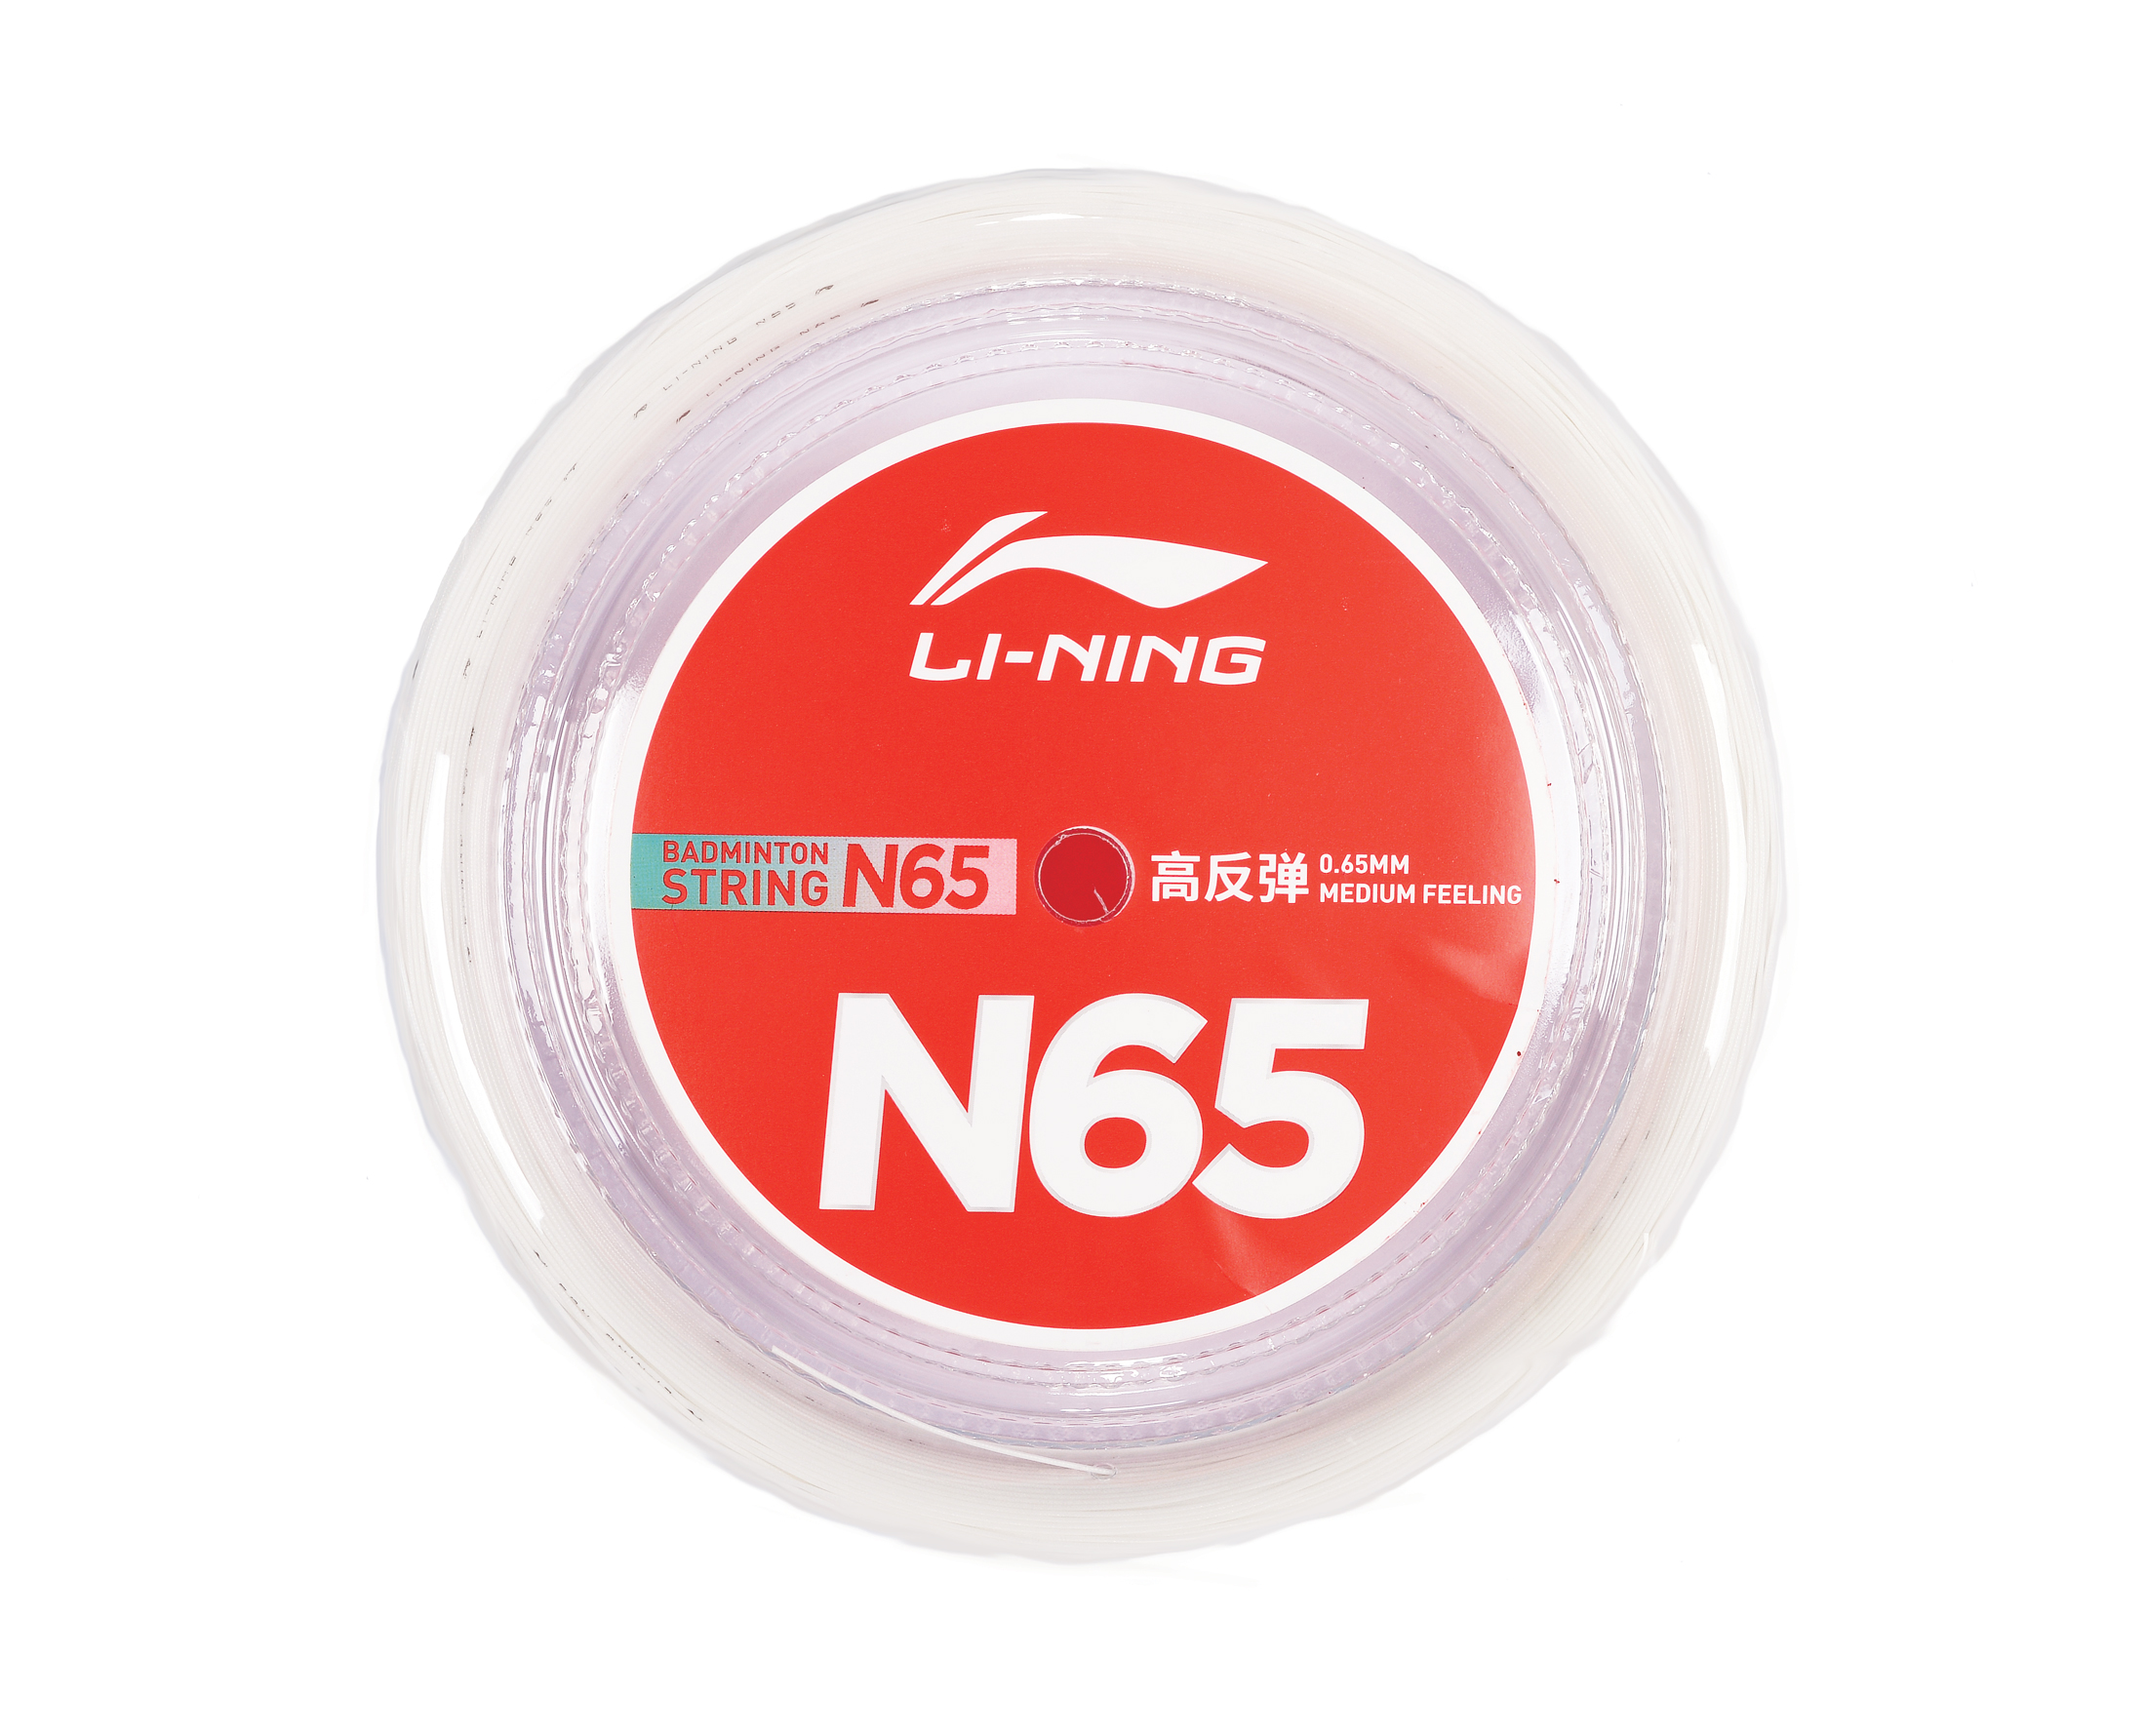 Badminton String Reel N65 AXJR016-1 - Li-Ning